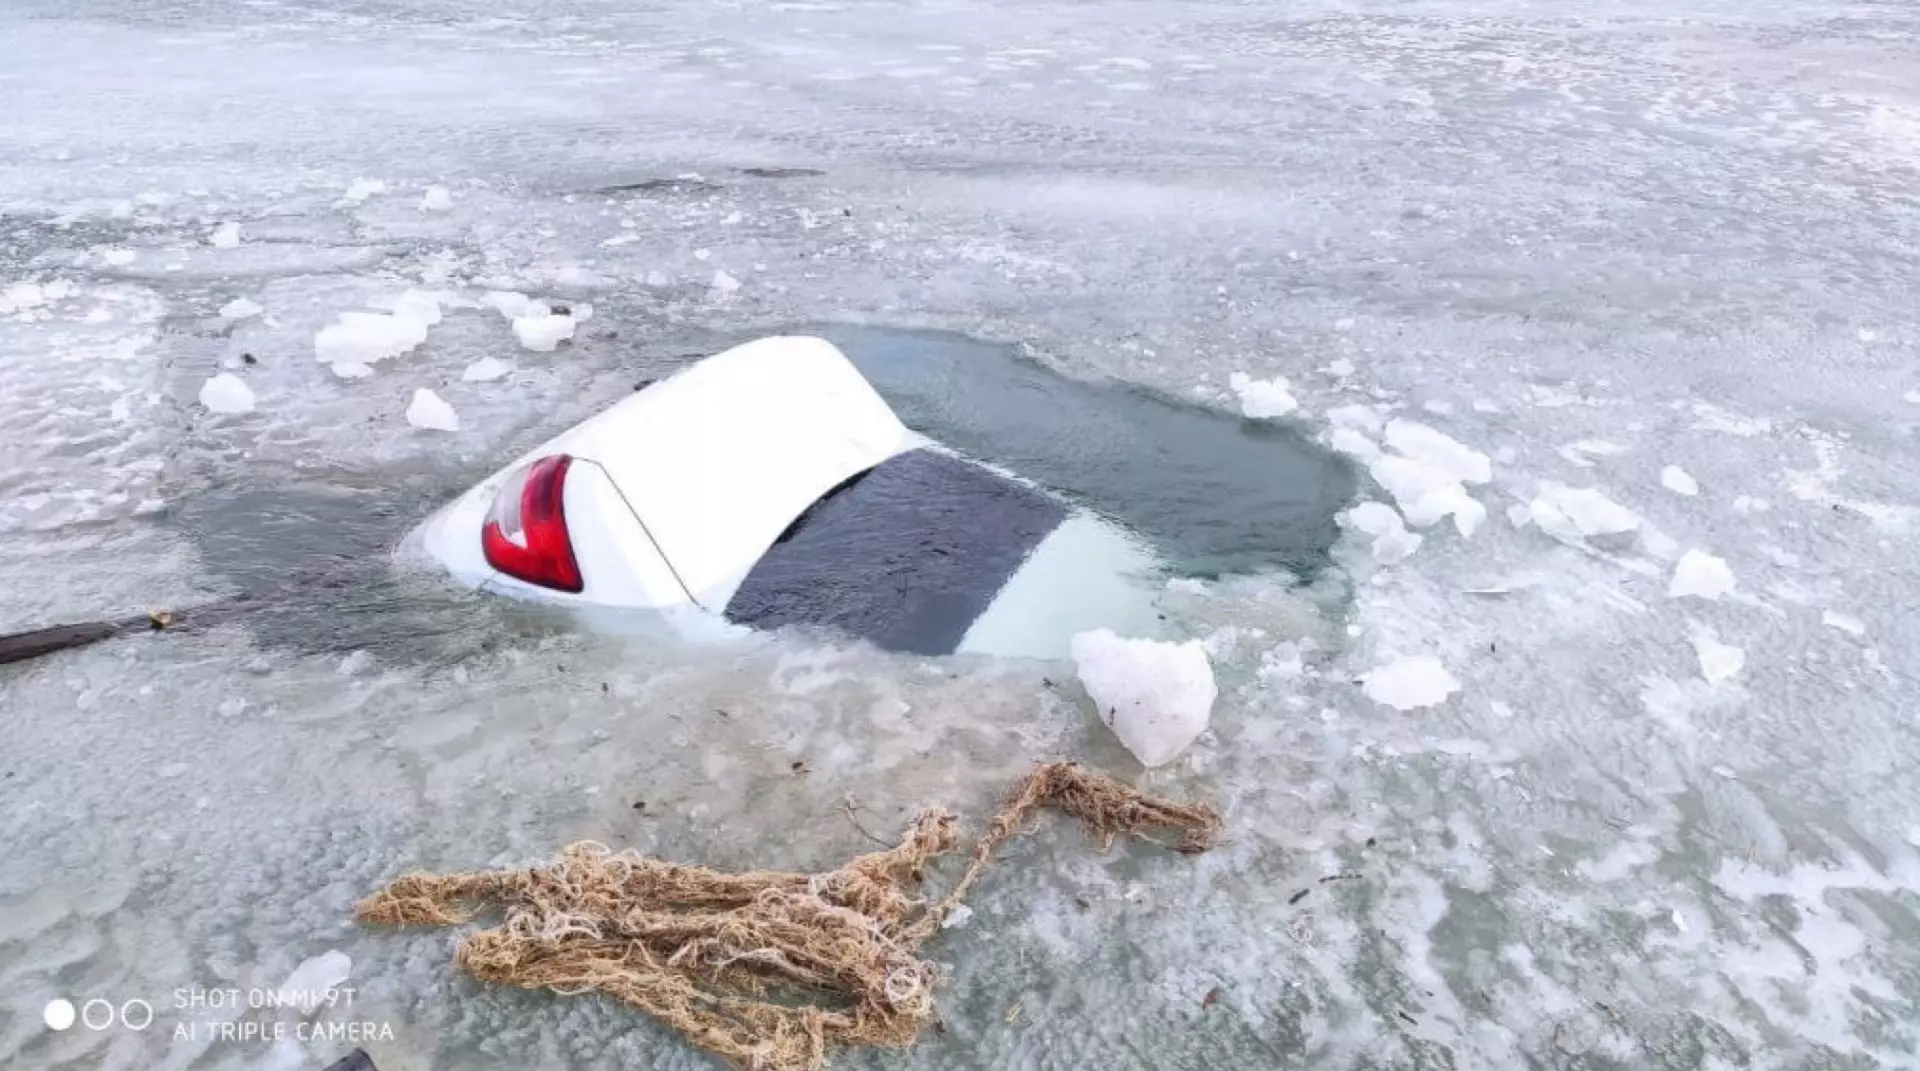 Машина провалилась под лед. Машина ушла под лед. Автомобиль на льду. Автомобиль провалился под лед. Утонул провалился под лед